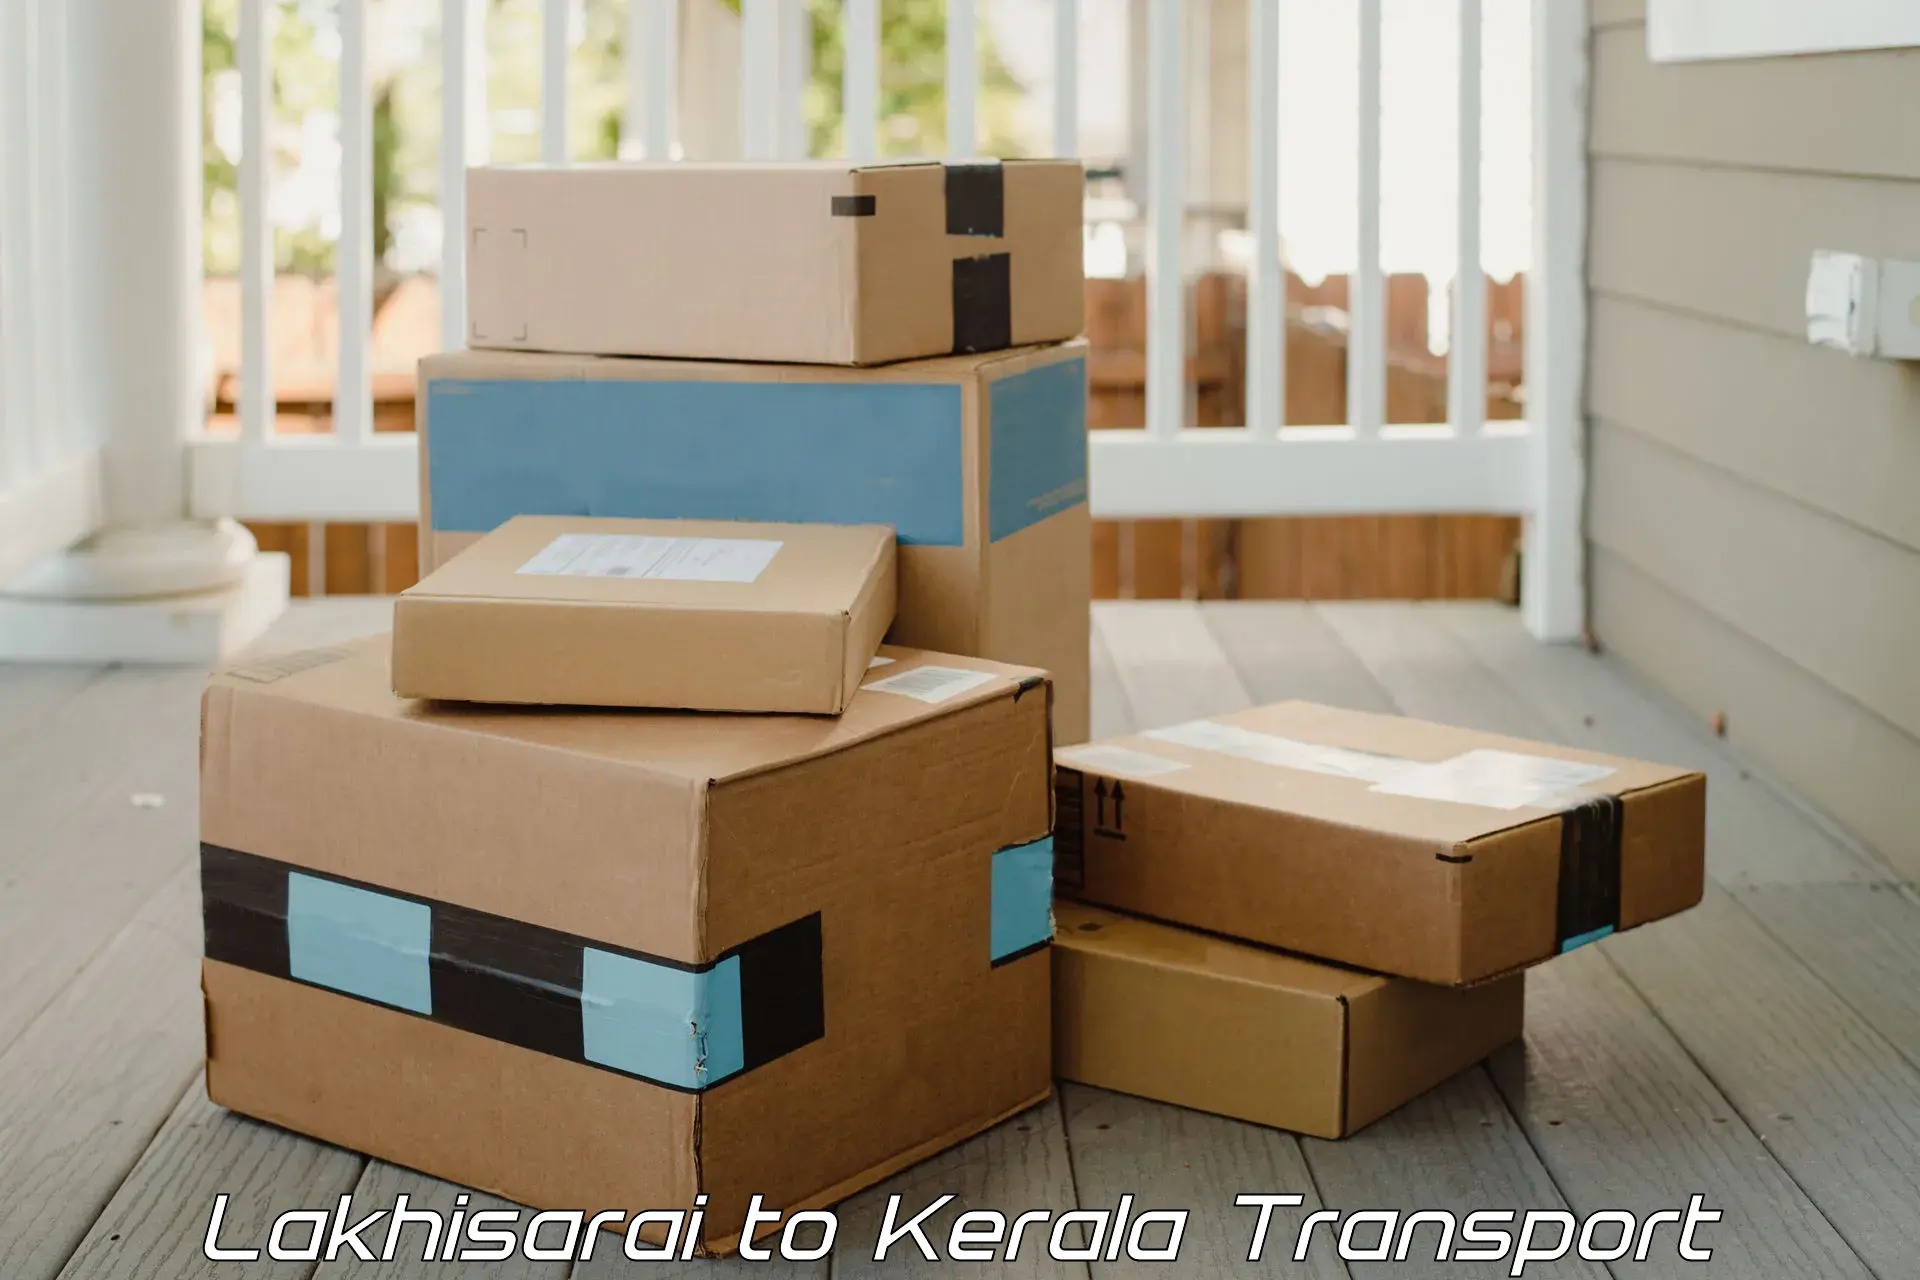 Logistics transportation services Lakhisarai to Kerala